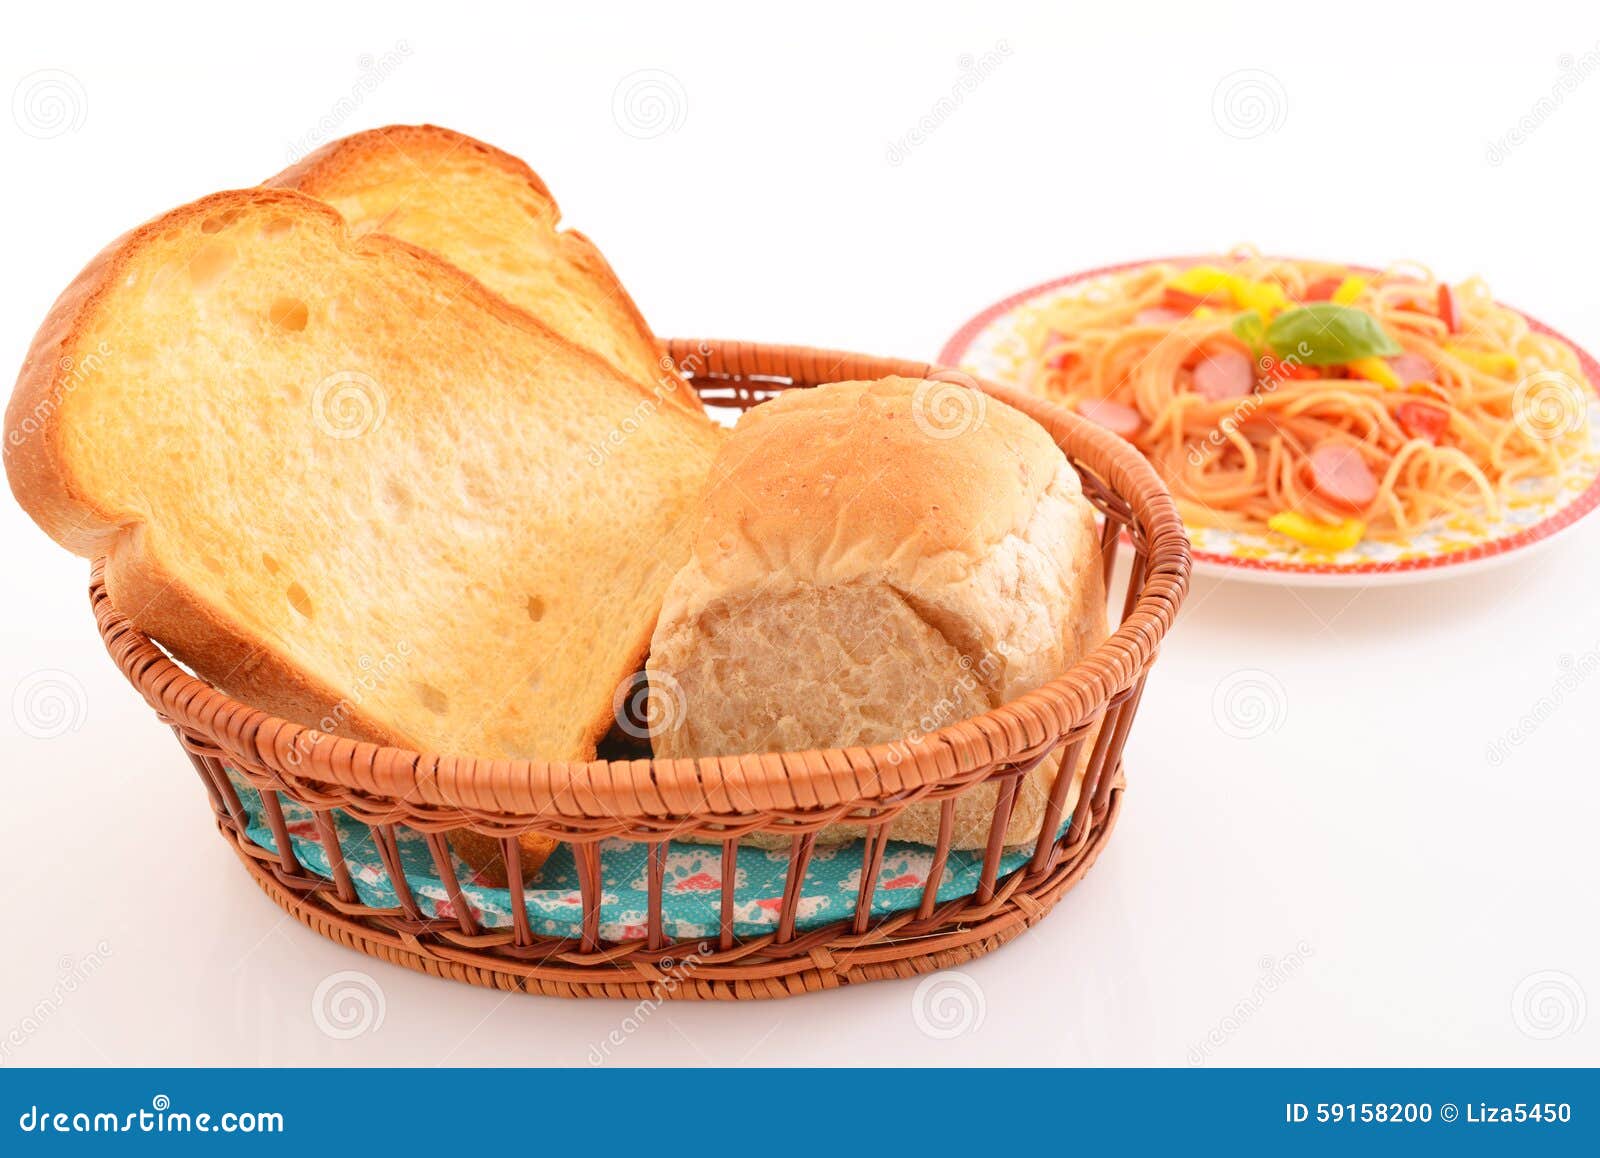 Delicious spaghetti stock photo. Image of meat, bread - 59158200